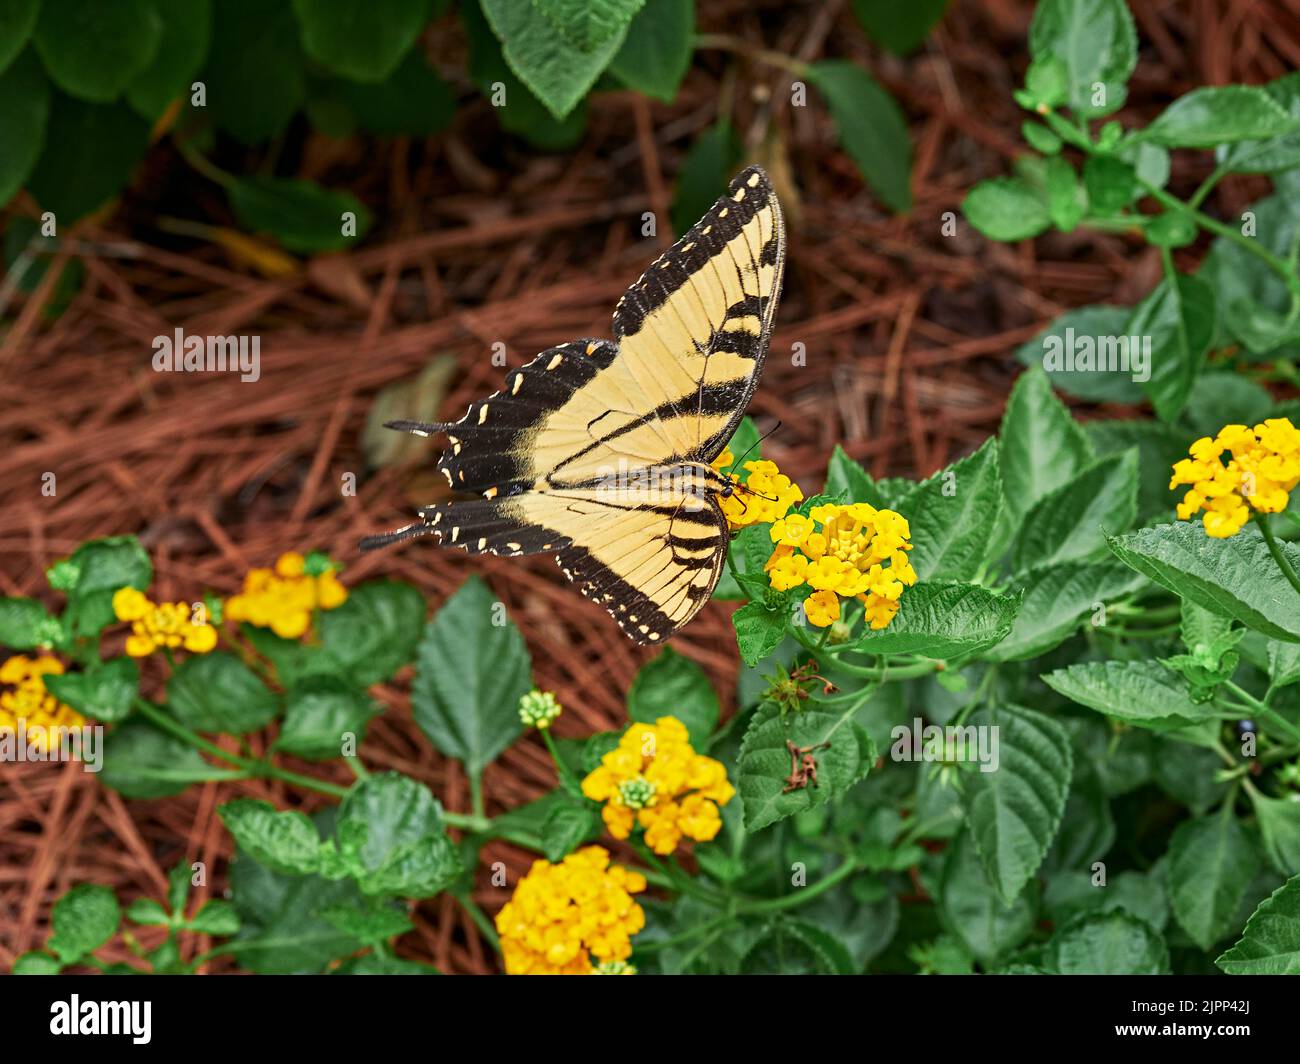 Cola de golondrina de tigre del este (Pterourus glaucus), amarilla y negra, mariposa en un néctar de recolección de flores de lantana en el centro de Alabama, Estados Unidos. Foto de stock